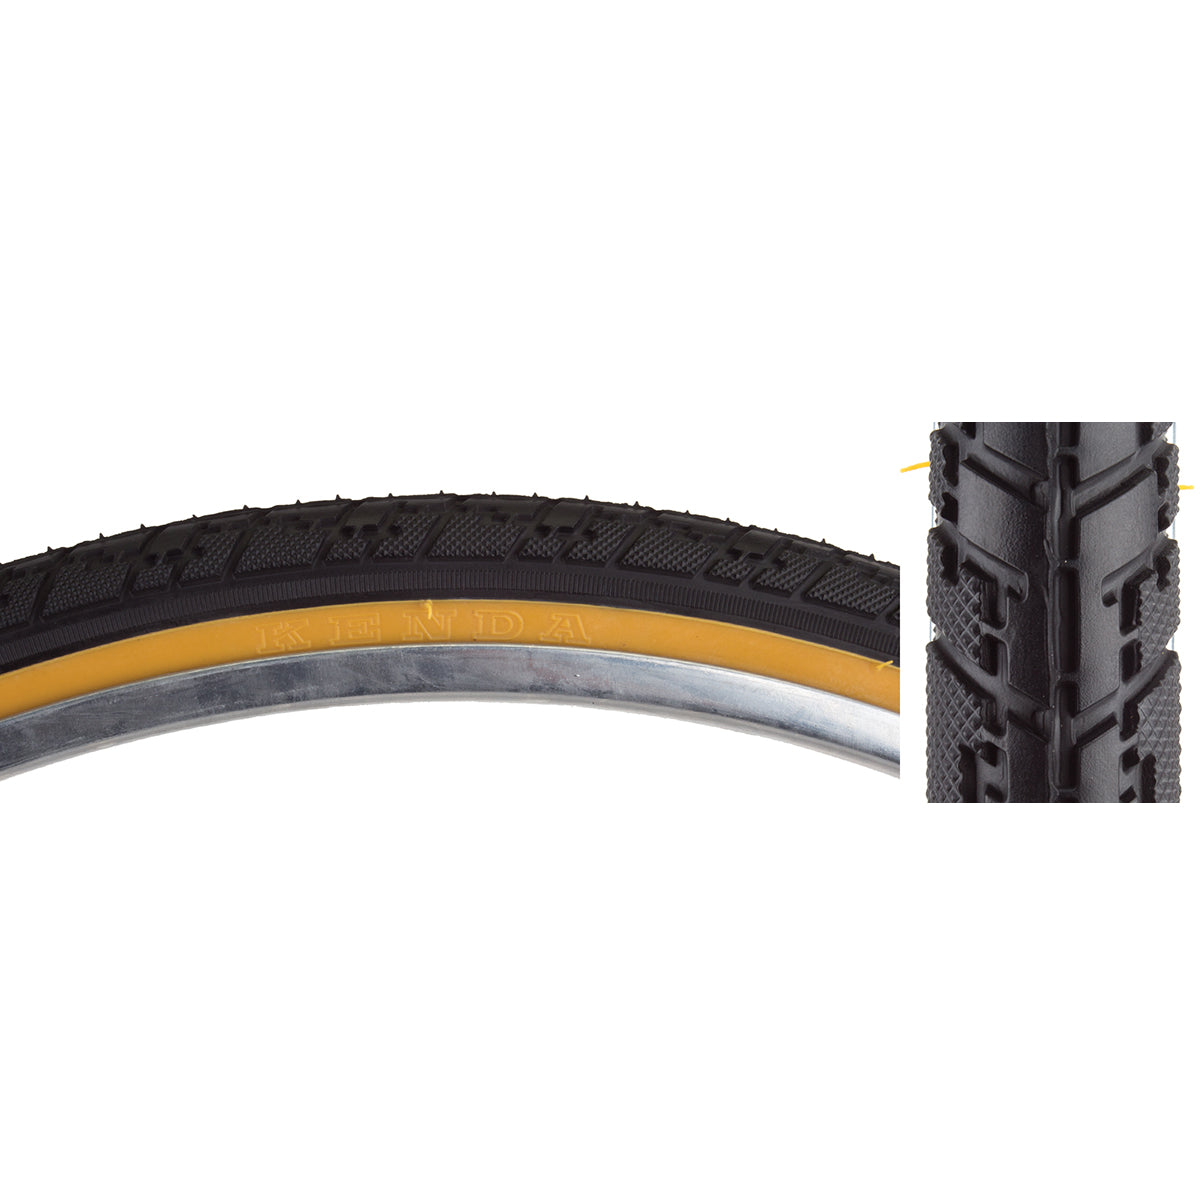 SE Bikes Bozack Tire 26x2.4 | The Bikesmiths